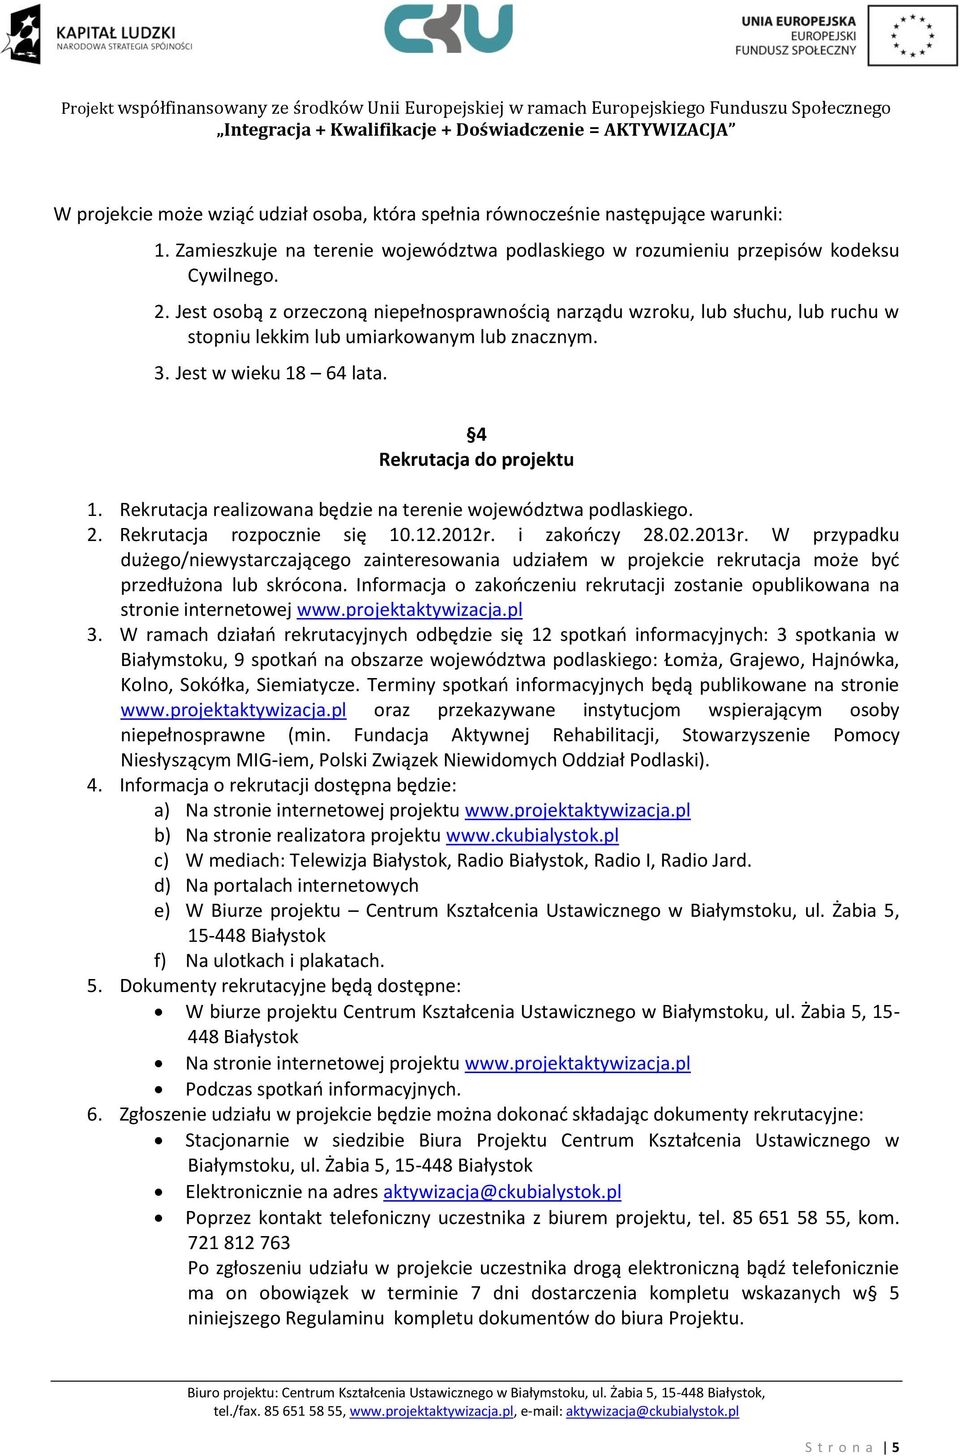 Rekrutacja realizowana będzie na terenie województwa podlaskiego. 2. Rekrutacja rozpocznie się 10.12.2012r. i zakończy 28.02.2013r.